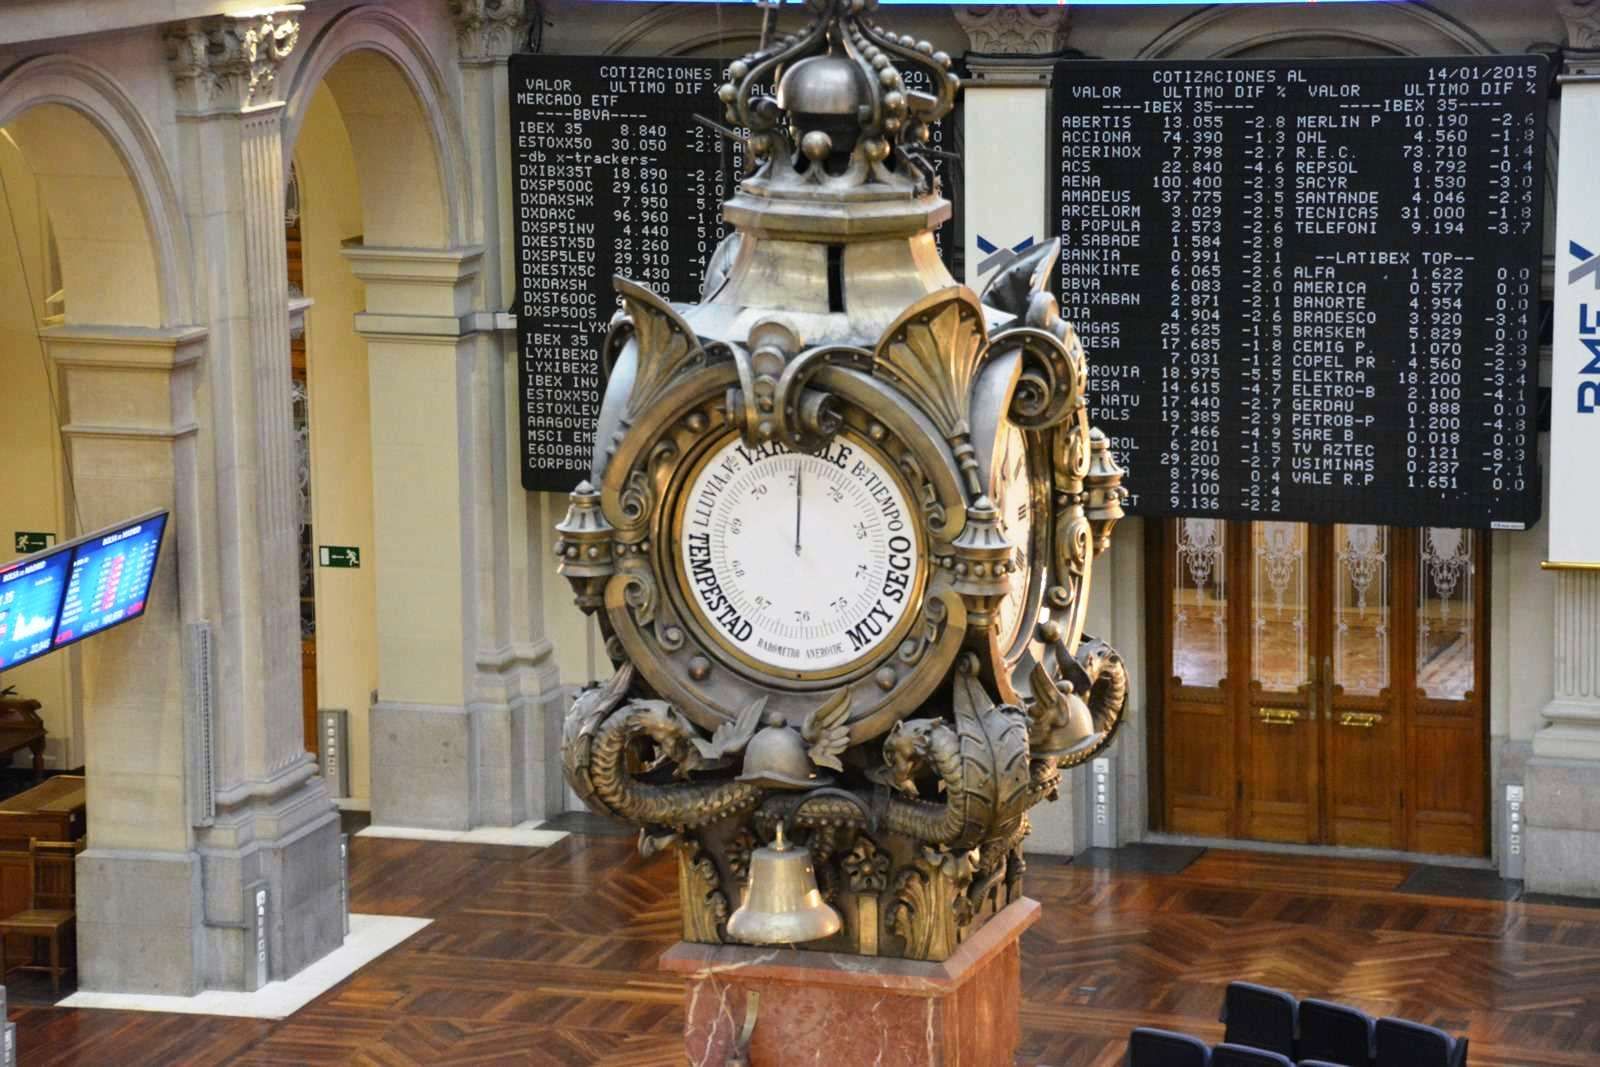 Reloj del palacio de la bolsa de Madrid